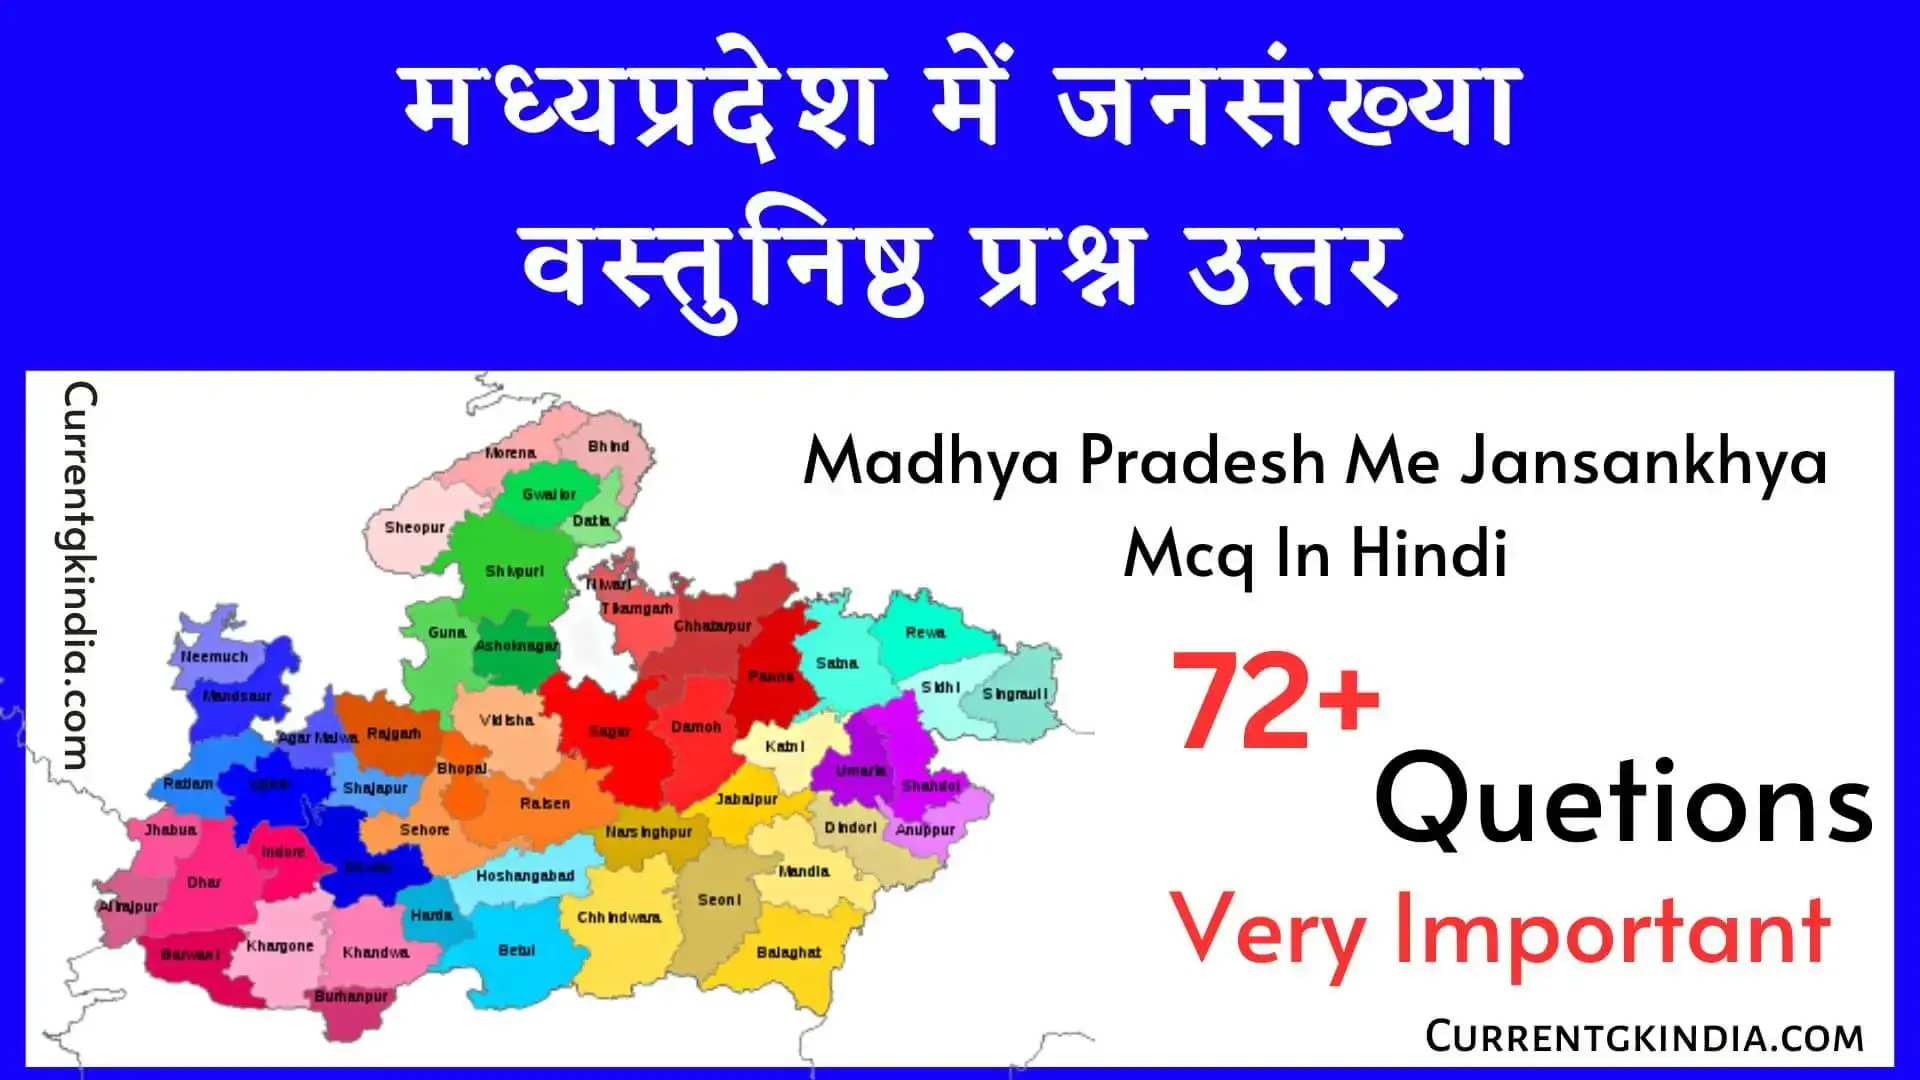 मध्यप्रदेश में जनसंख्या वस्तुनिष्ठ प्रश्न उत्तर Madhya Pradesh Me Jansankhya Mcq In Hindi Mp Me Jansankhya Mcq In Hindi मप्र में जनसंख्या वस्तुनिष्ठ प्रश्न उत्तर